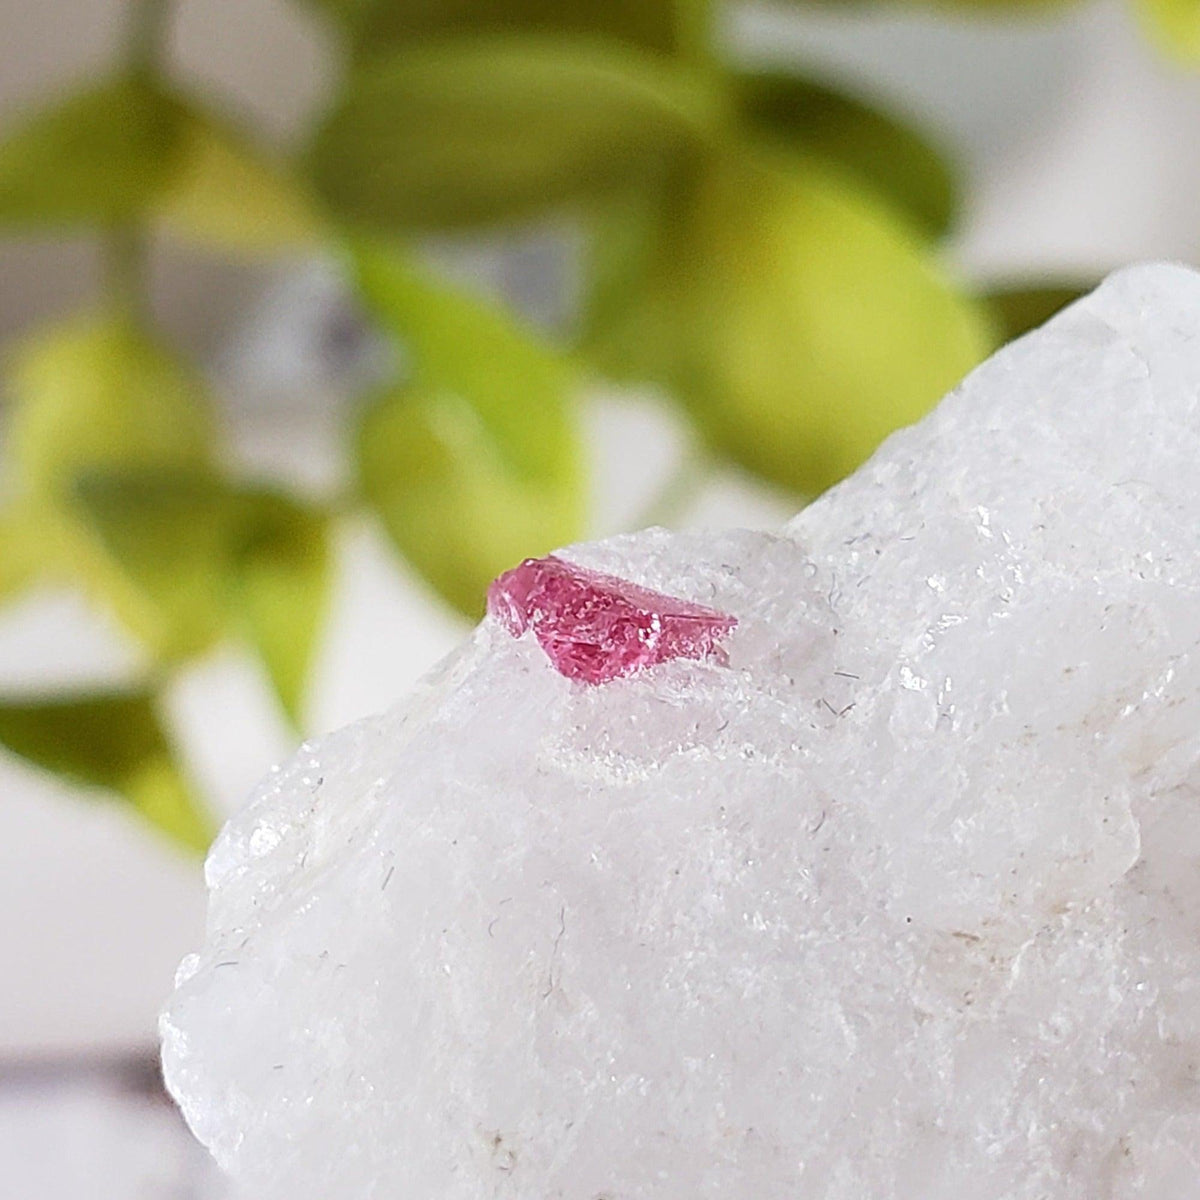 Spinel Crystal in Marble Host | Red Spinel | 29 gr, 145.7 ct | Mogok, Myanmar